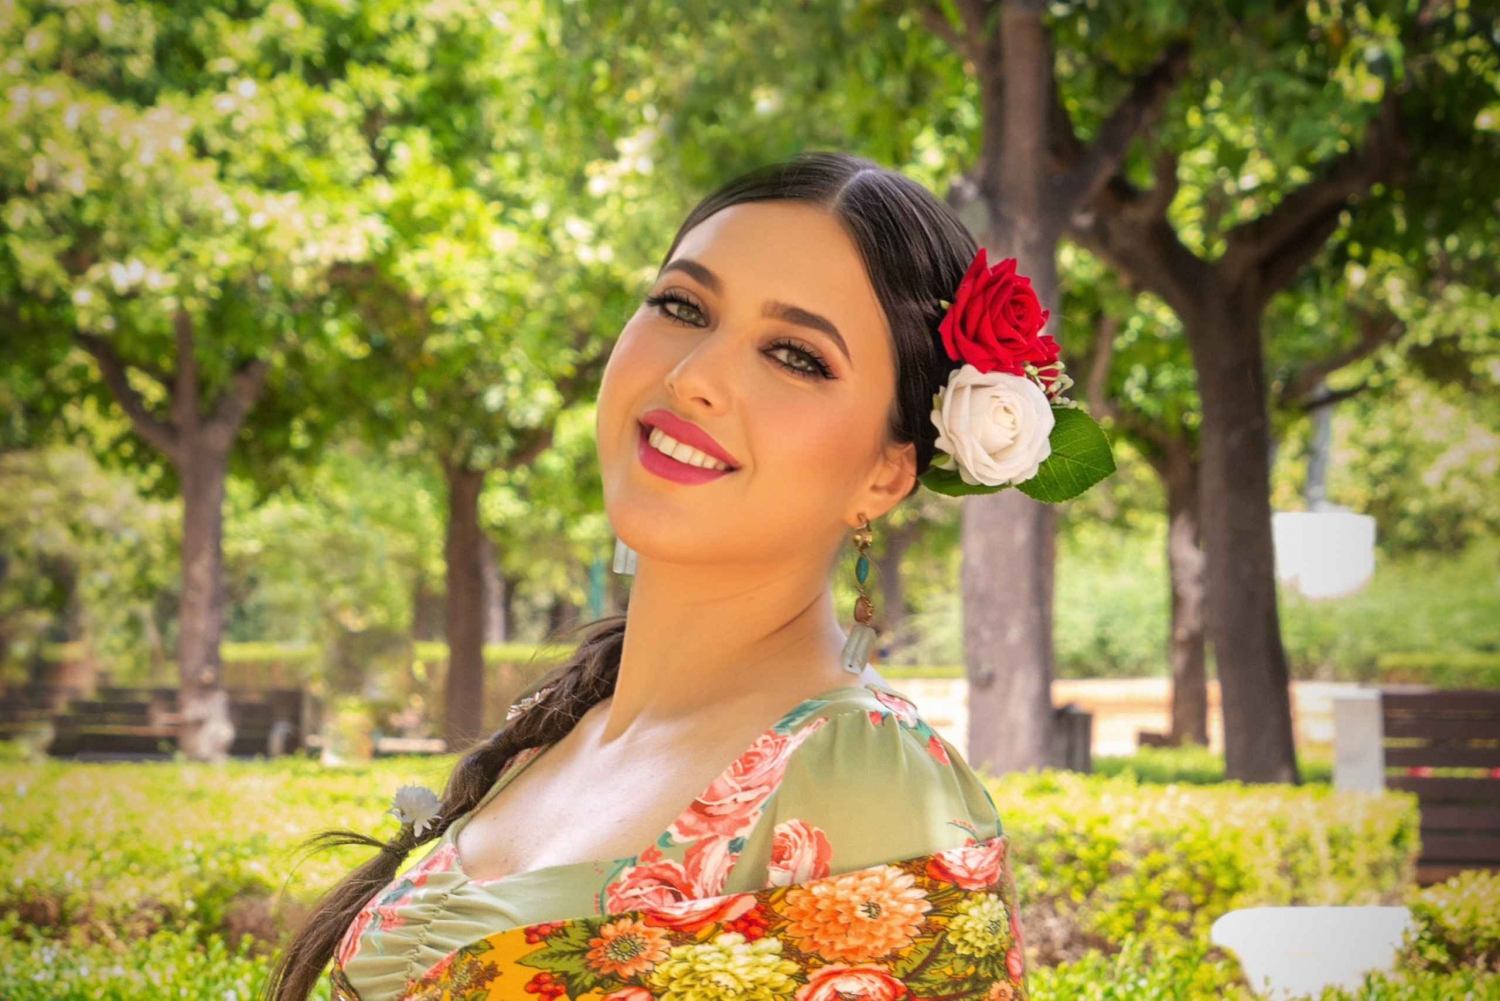 Fotografia com vestido tradicional de flamenco